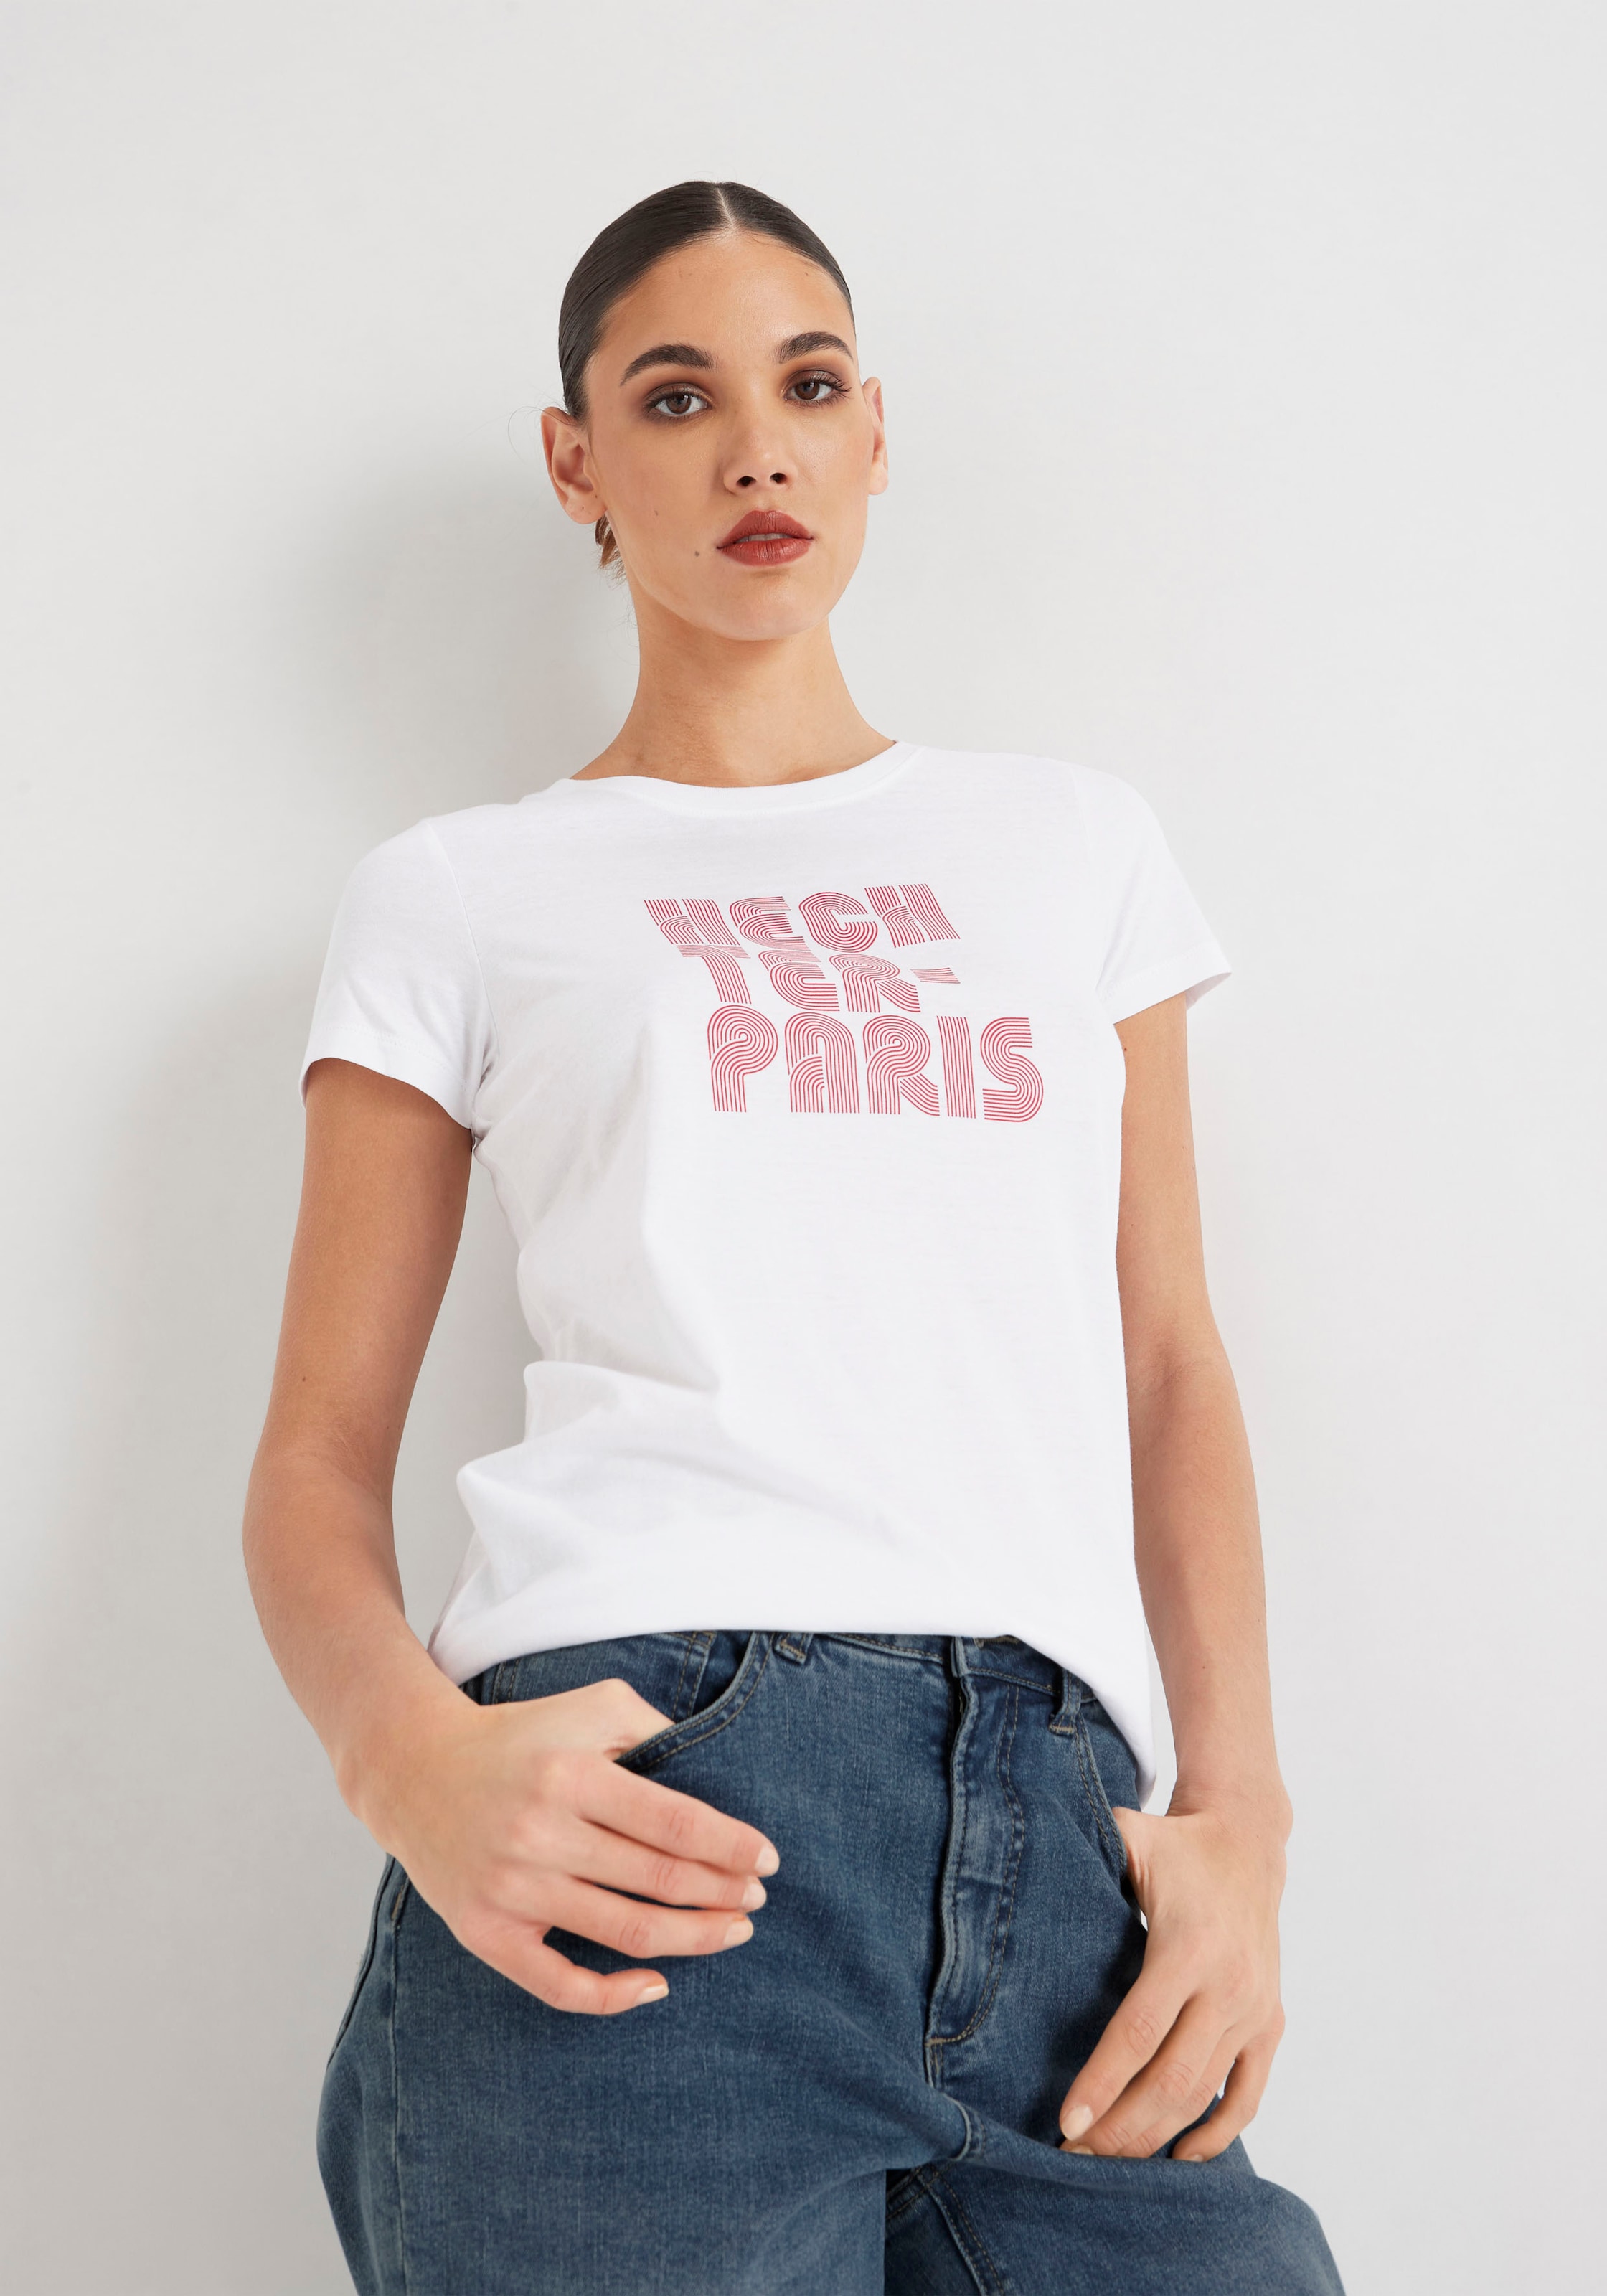 HECHTER PARIS T-Shirt, Druck mit walking kaufen I\'m 